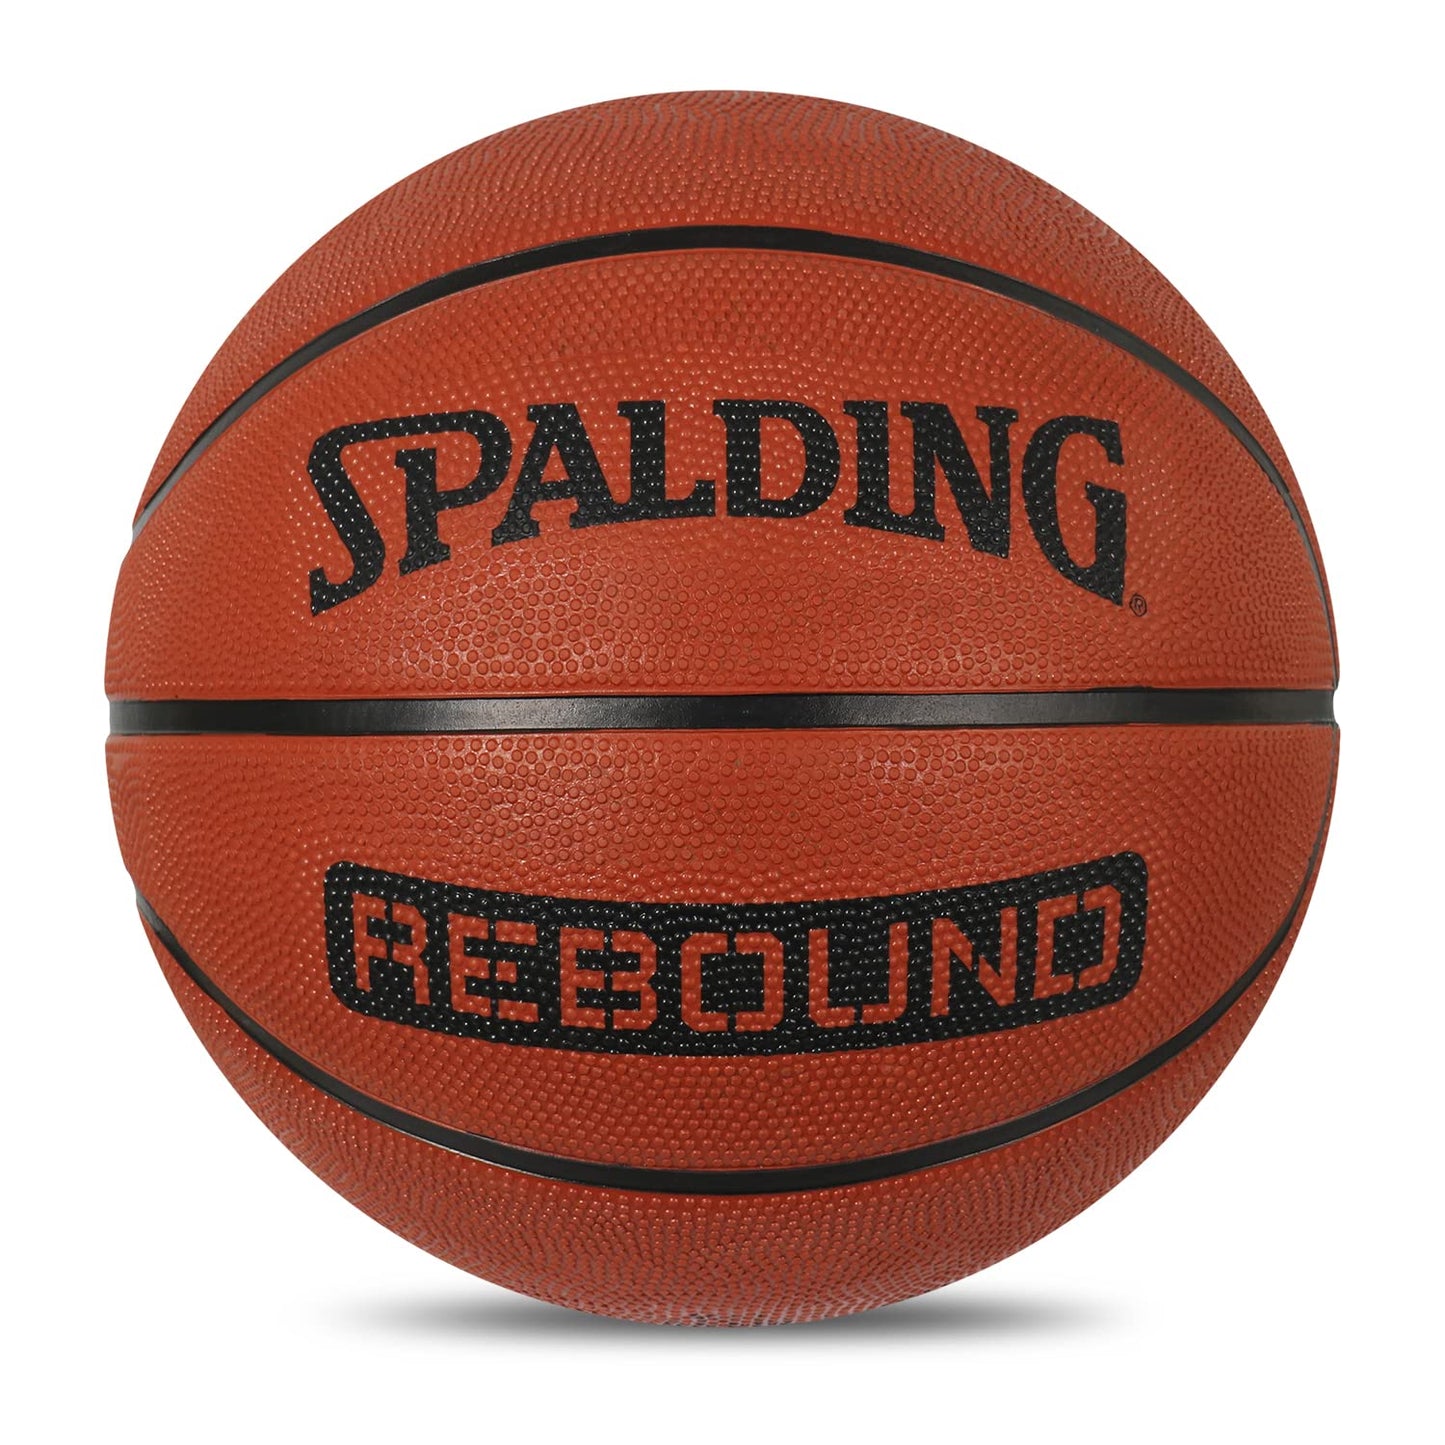 Spalding NBA Rebound Basketball, Brick - Best Price online Prokicksports.com